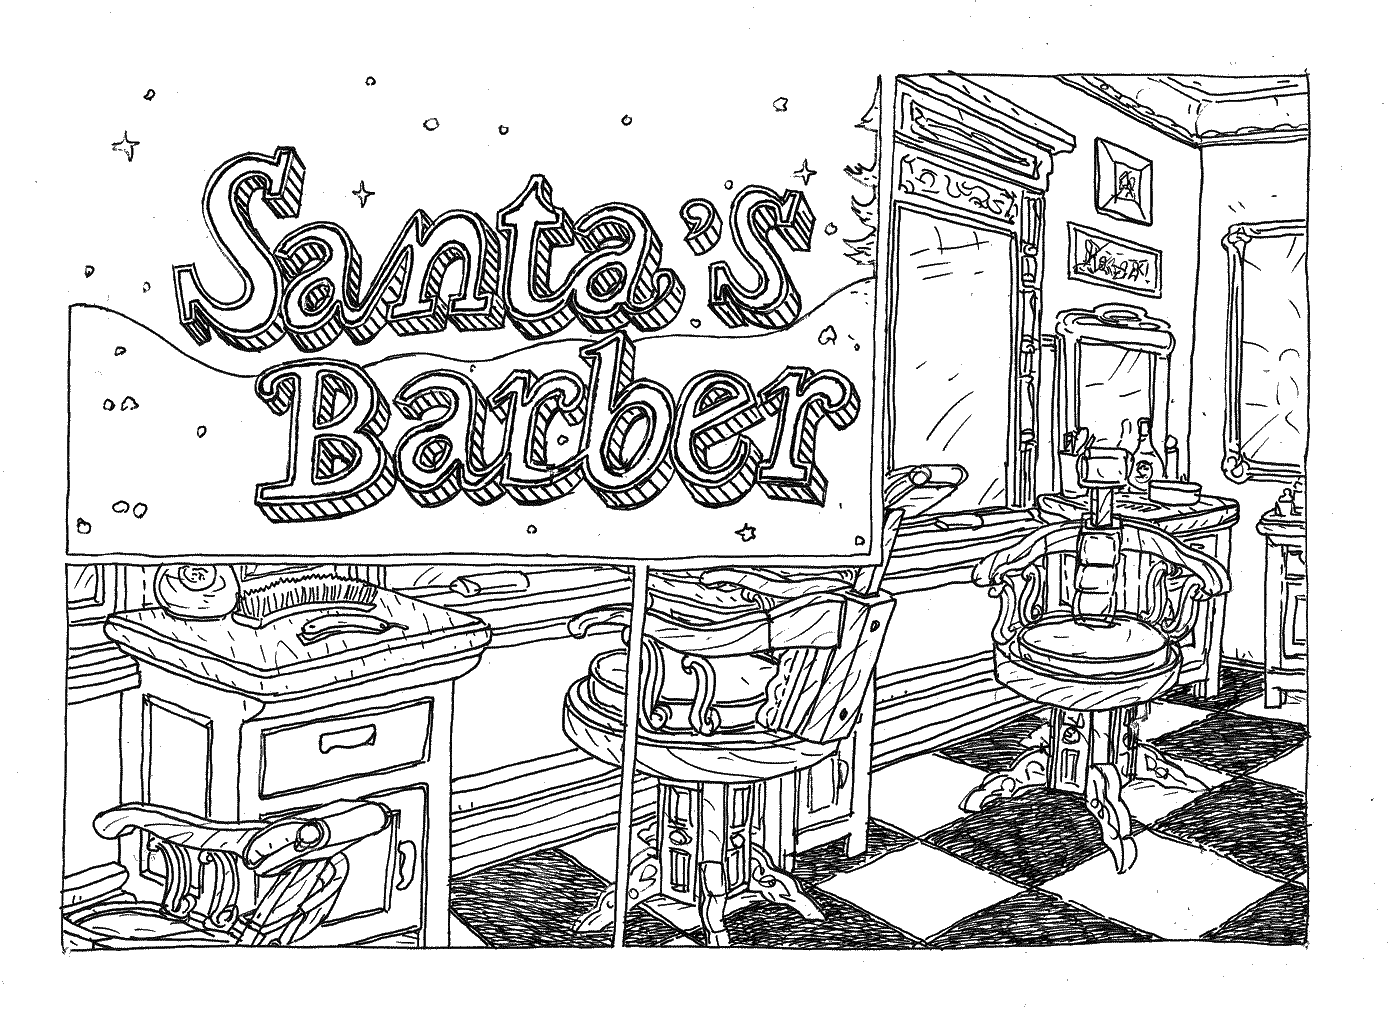 Santa's barber